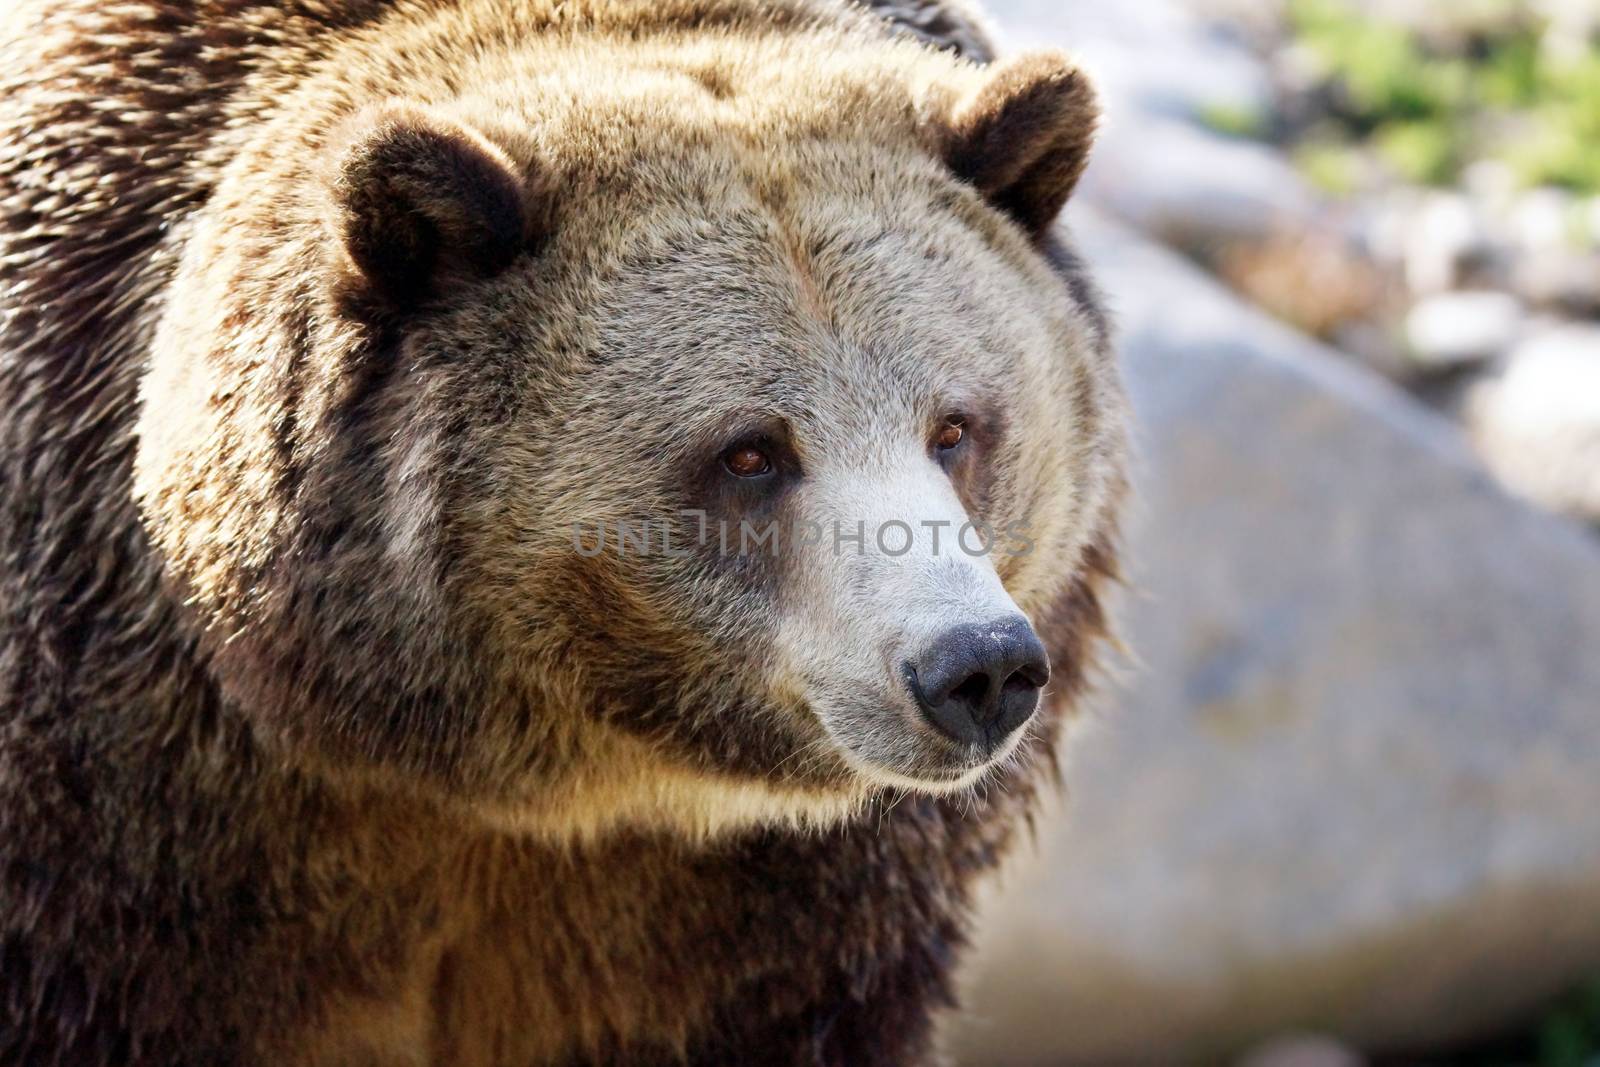 Portrait of a big grizzly brown bear, Ursus arctos horribilis